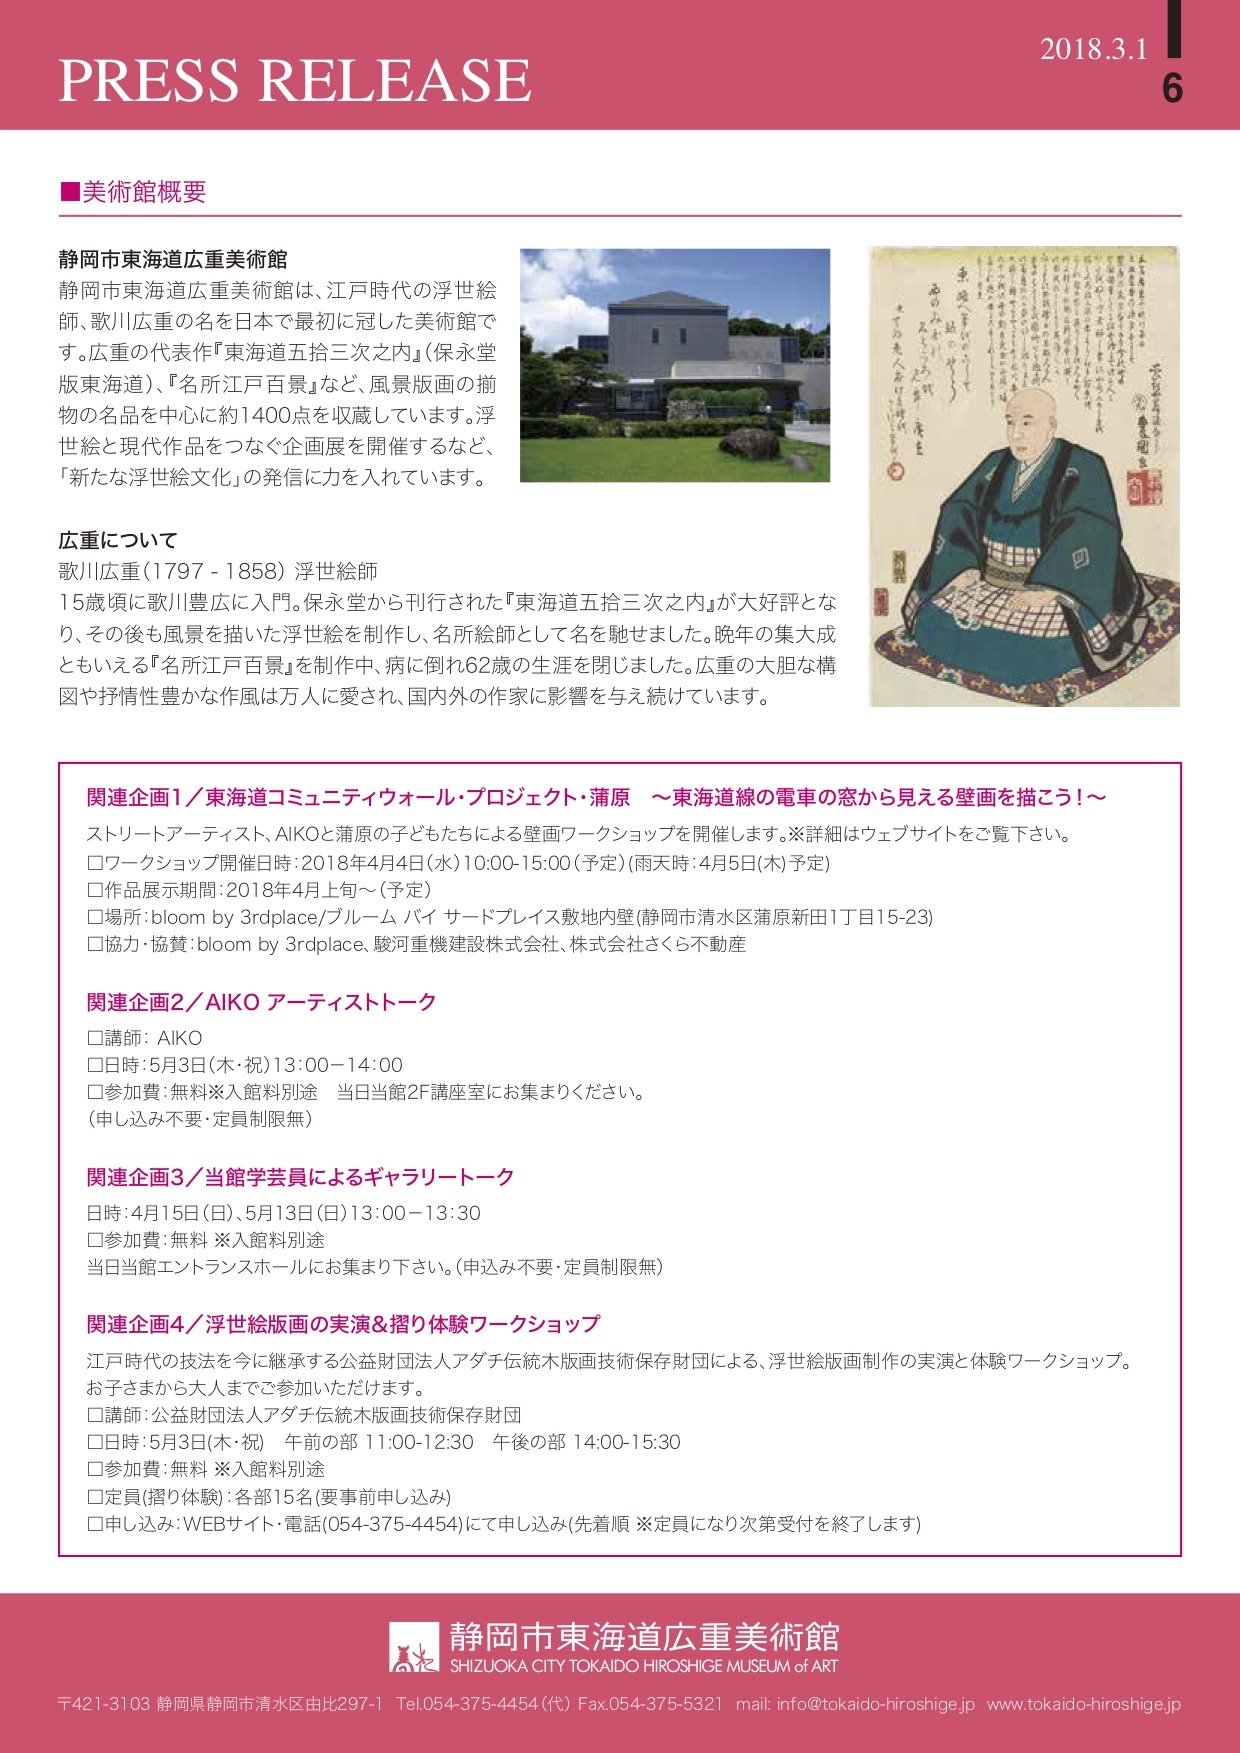 Aikoさん日本初の個展が静岡で開催されます_a0077842_20141442.jpg